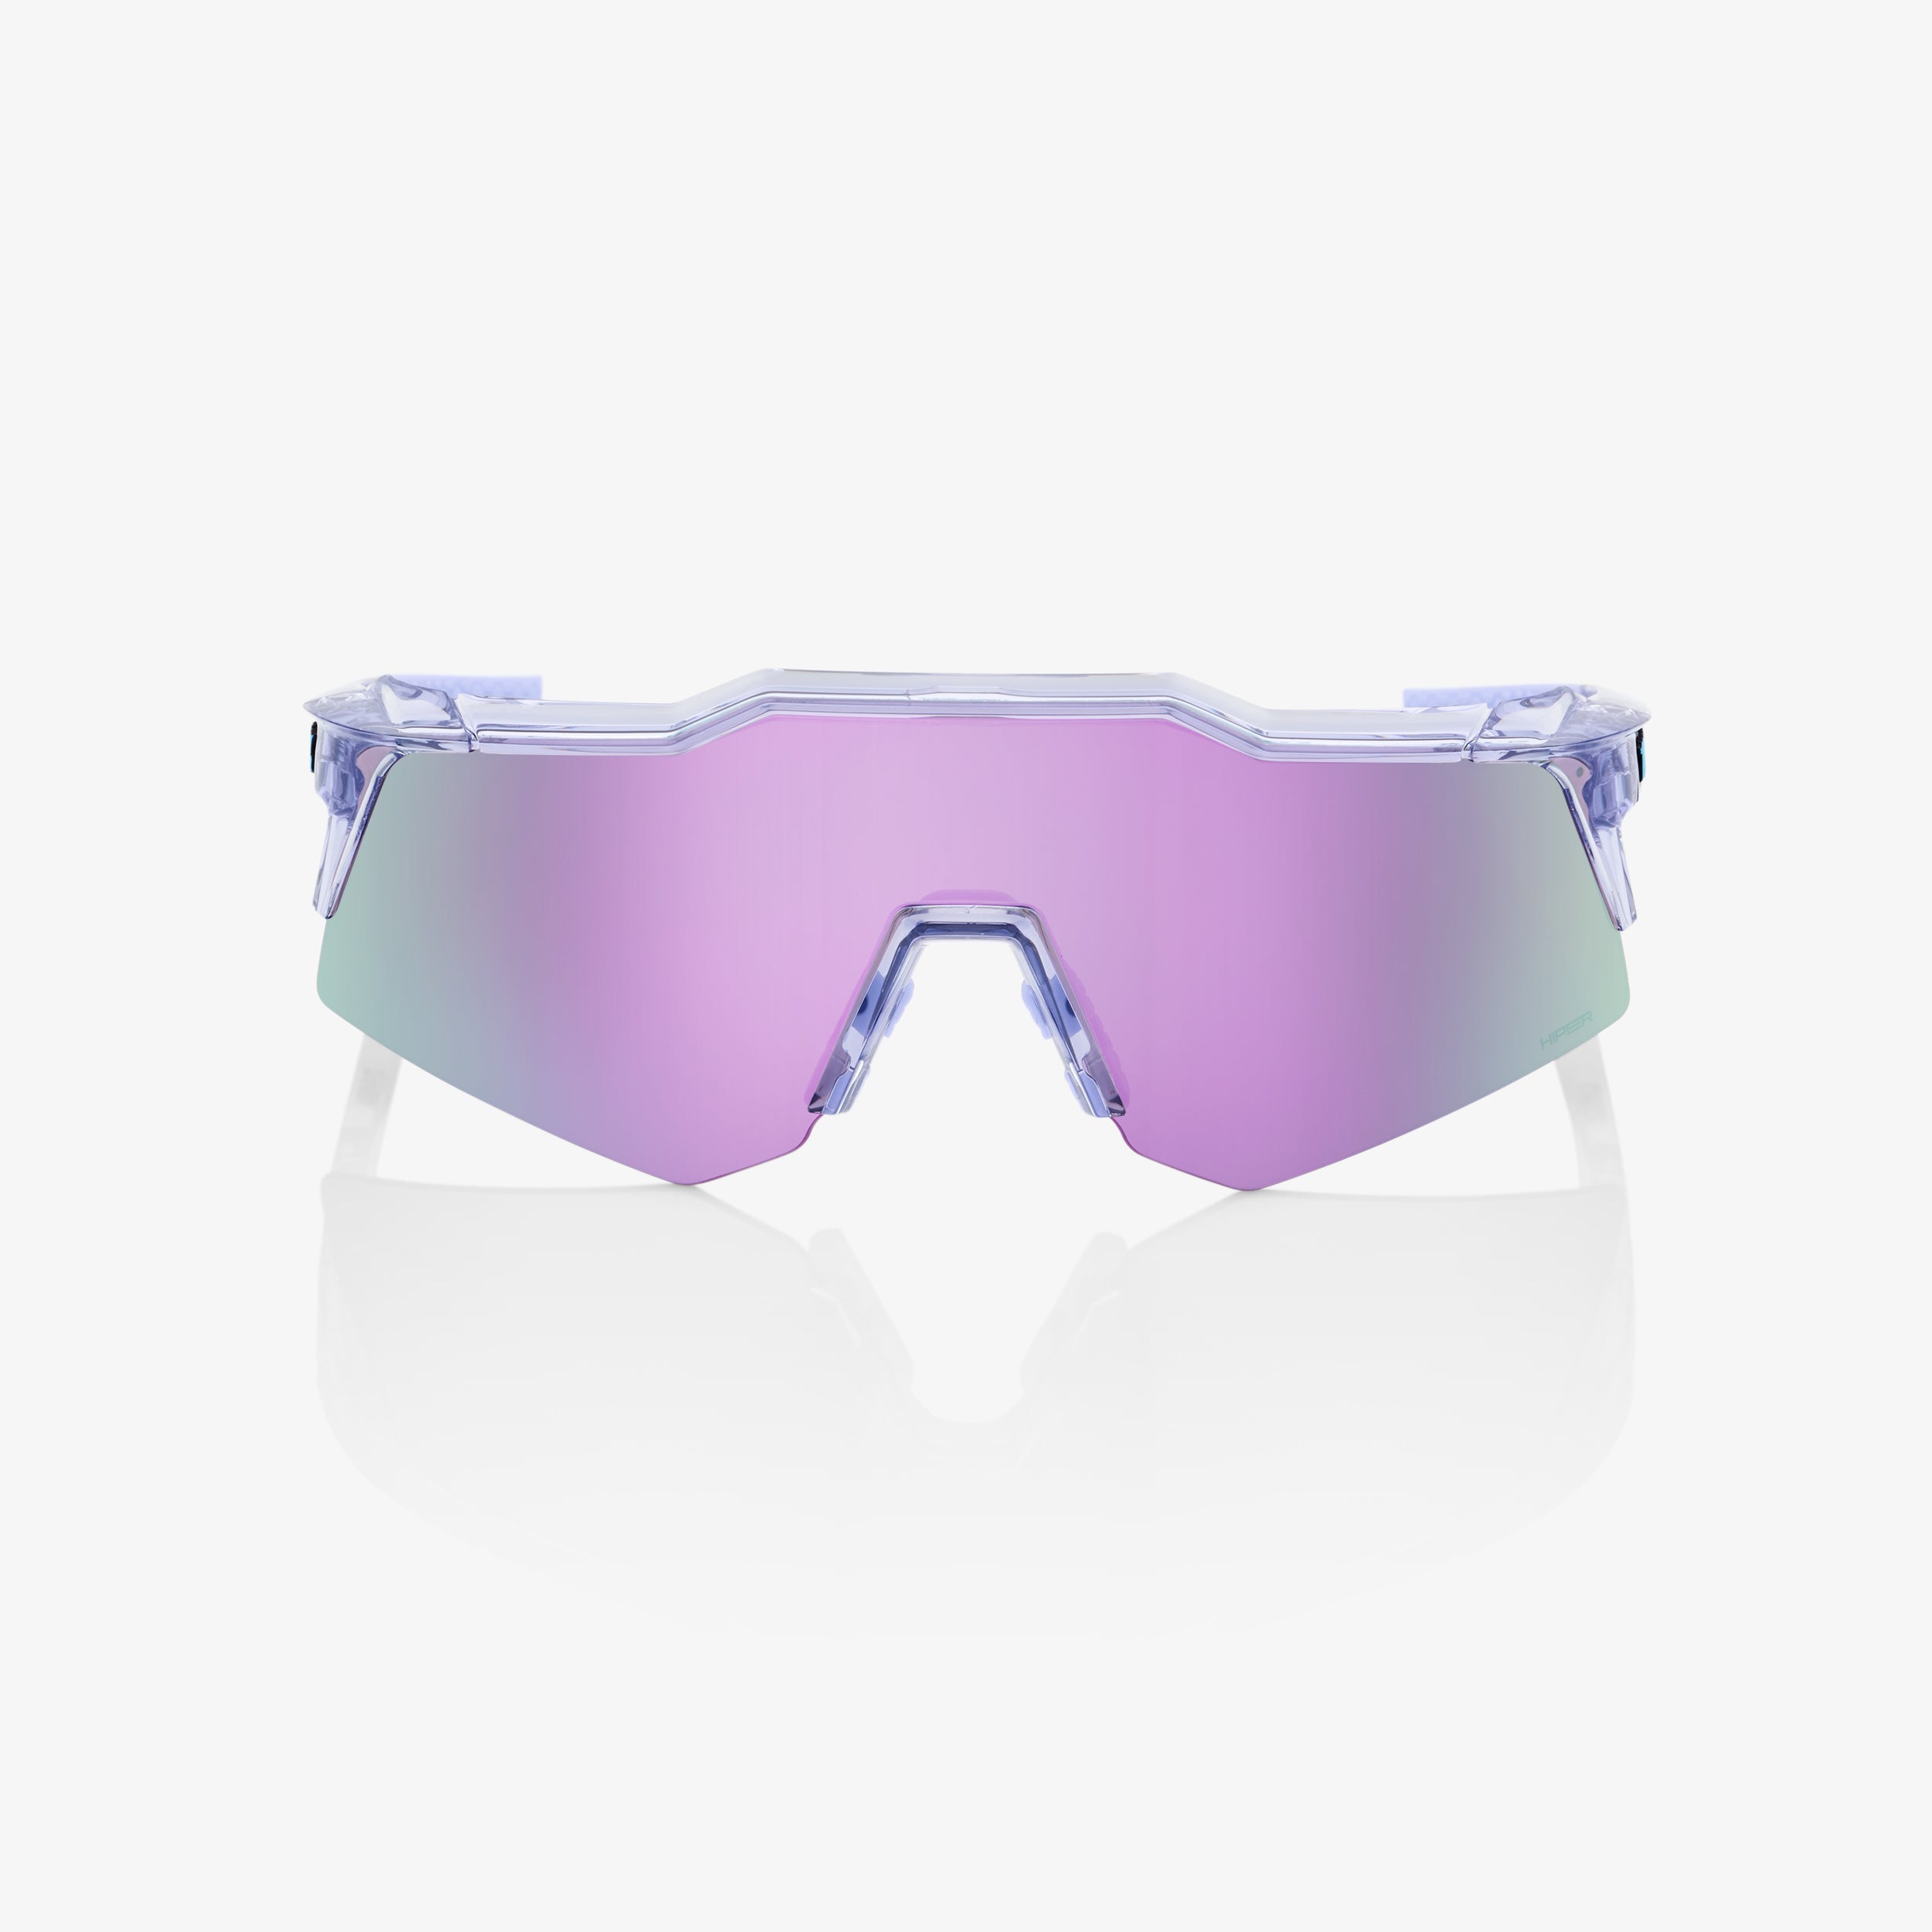 SPEEDCRAFT® XS - Polished Translucent Lavender - HiPER® Lavender Mirror Lens